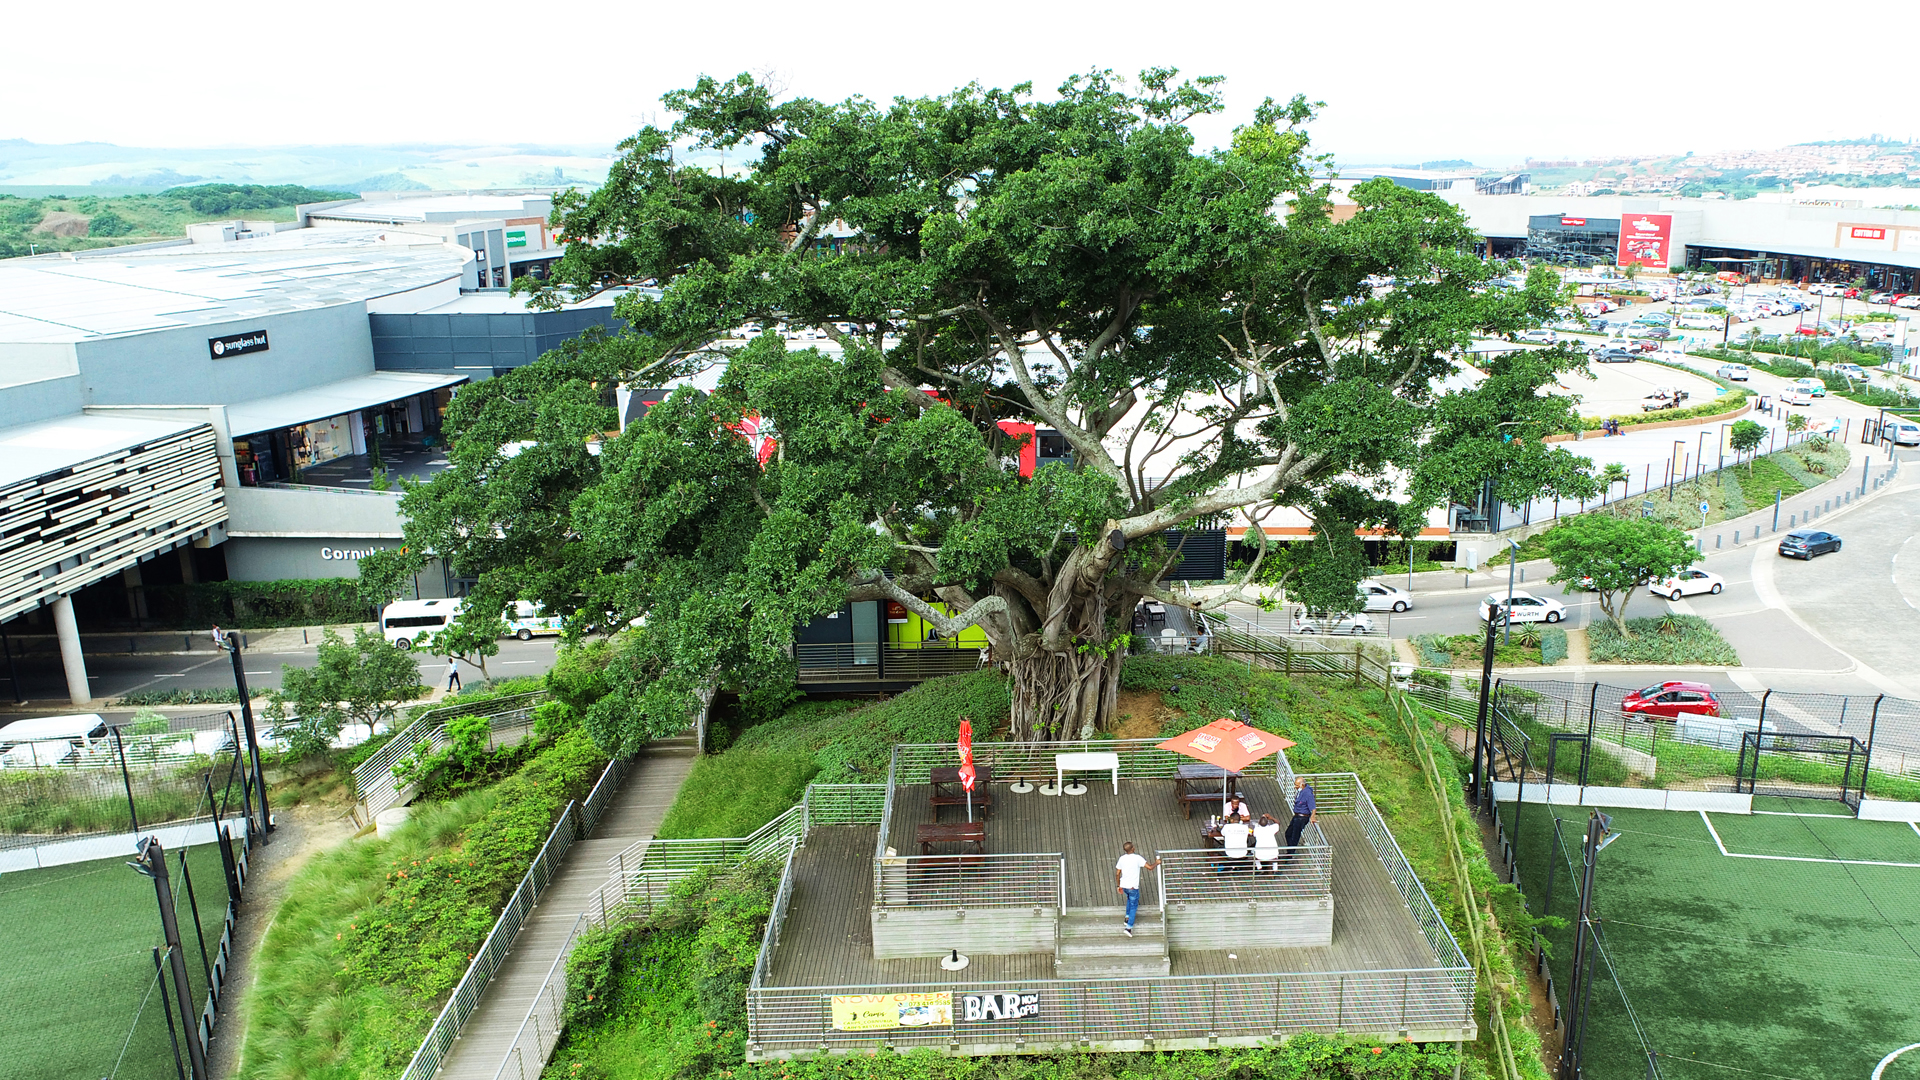 Cornubia Mall fig tree